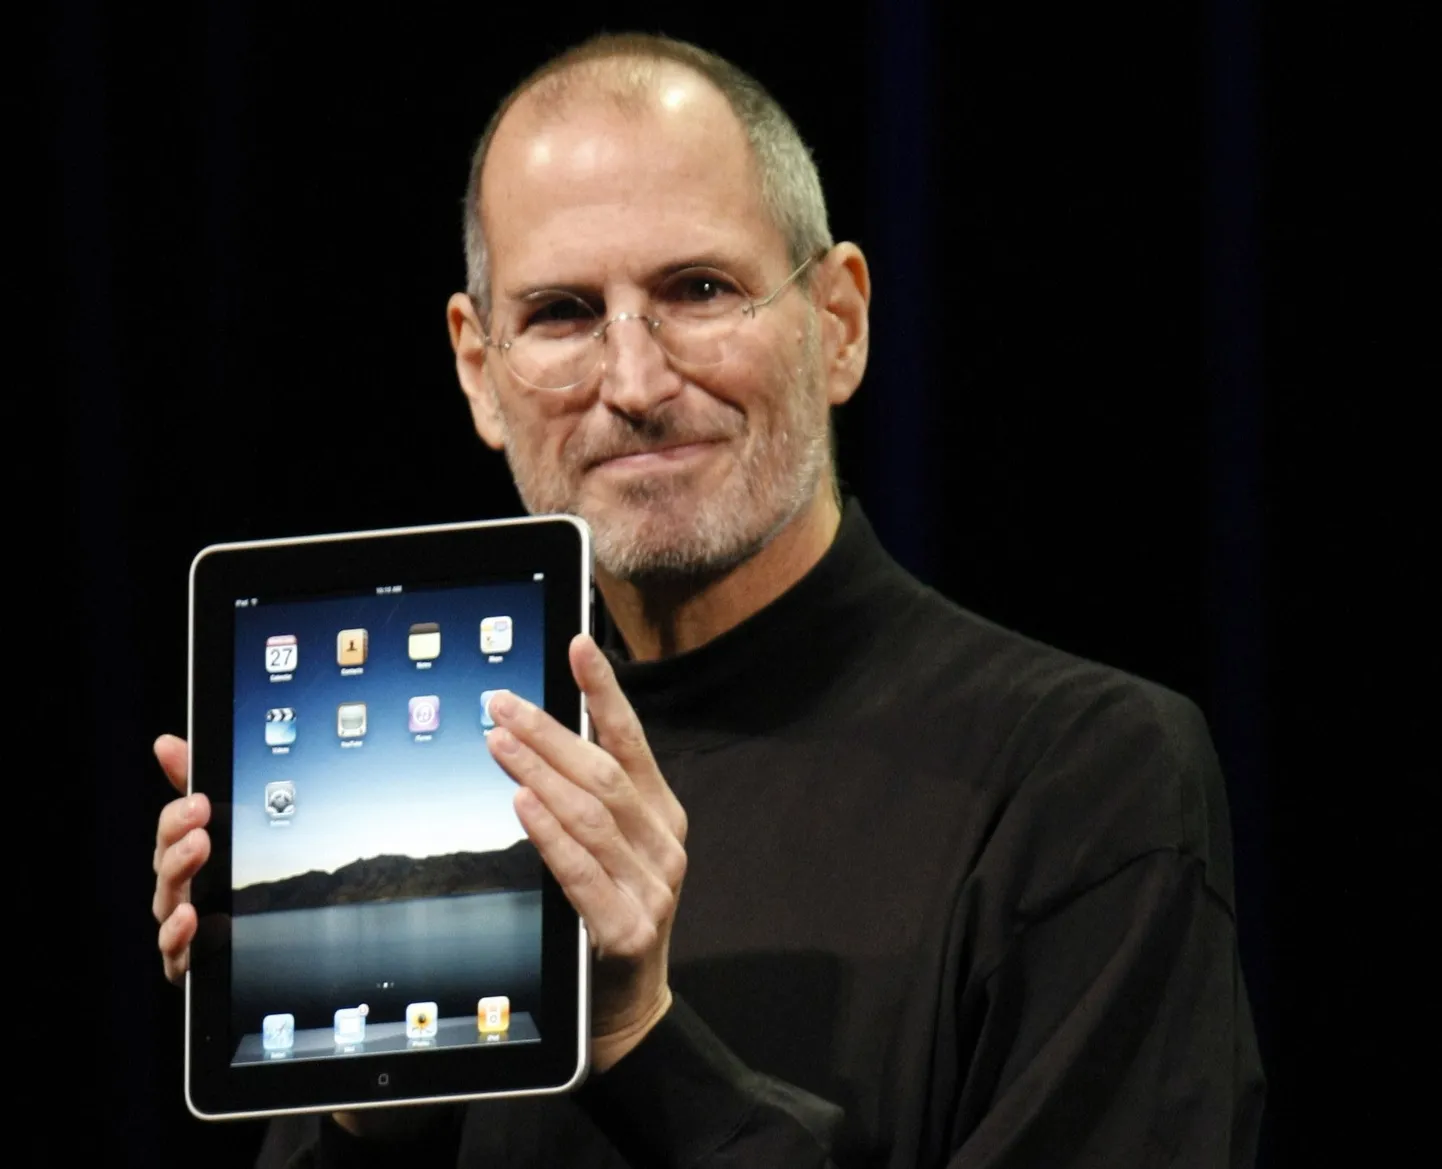 Apple'i juht Steve Jobs hoiab käes iPad'i.